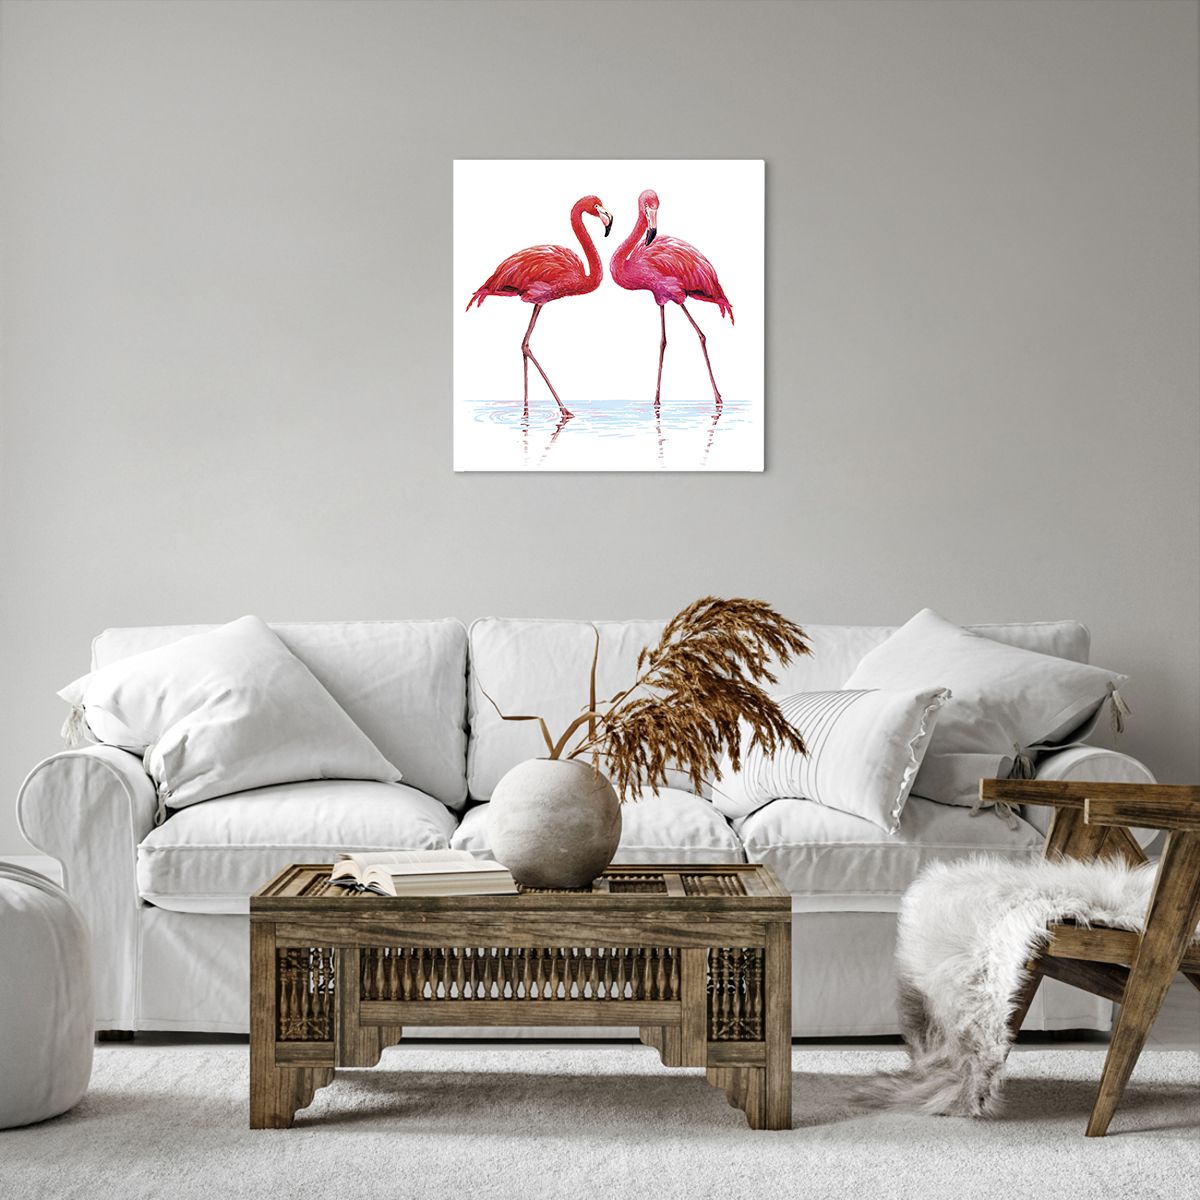 Obrazy na płótnie Flamingi, Obrazy na płótnie Ptaki, Obrazy na płótnie Sztuka, Obrazy na płótnie Zwierzęta, Obrazy na płótnie Brazylia